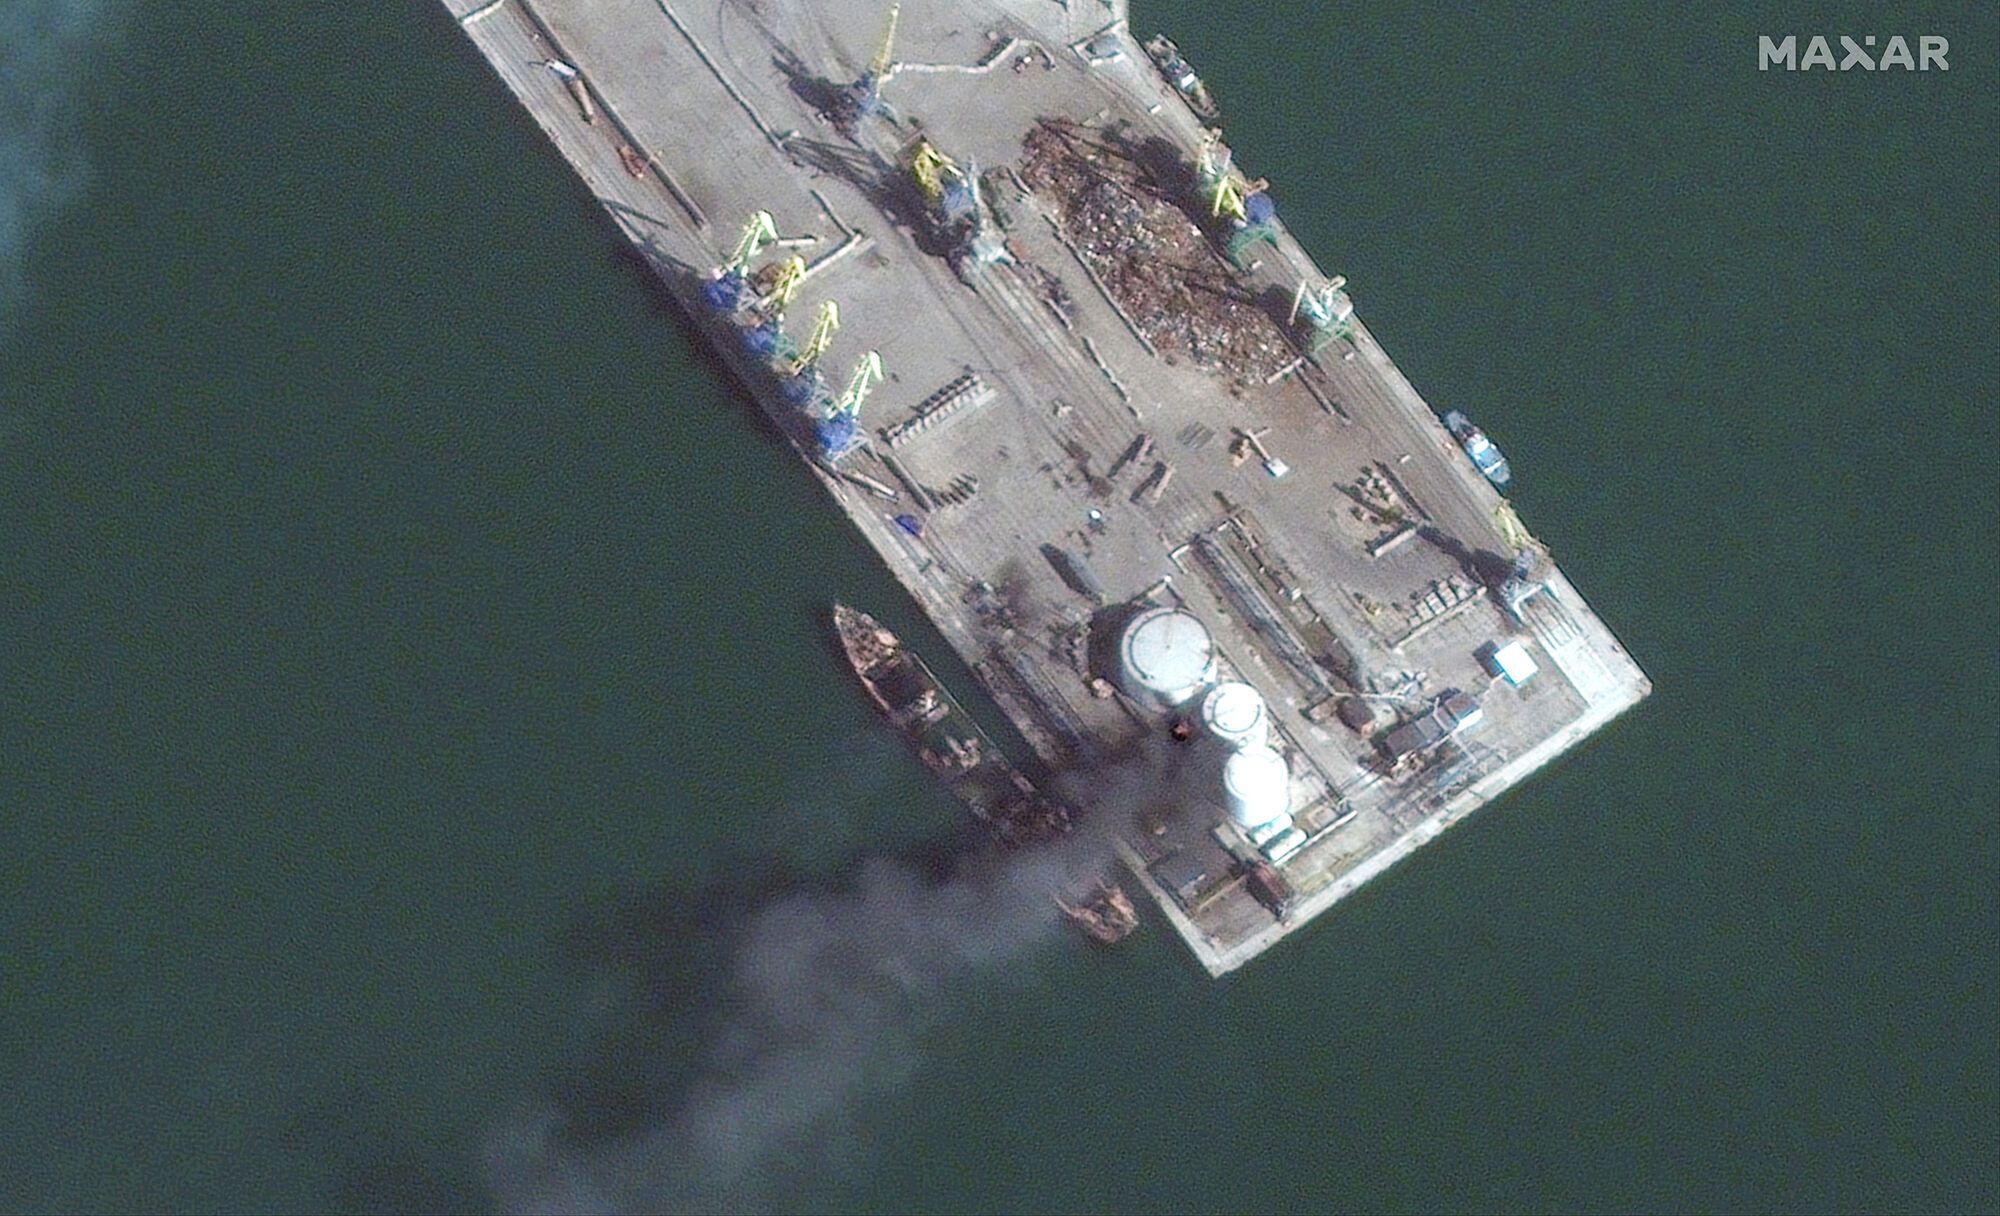 На них виден затопленный украинскими воинами российский большой десантный корабль